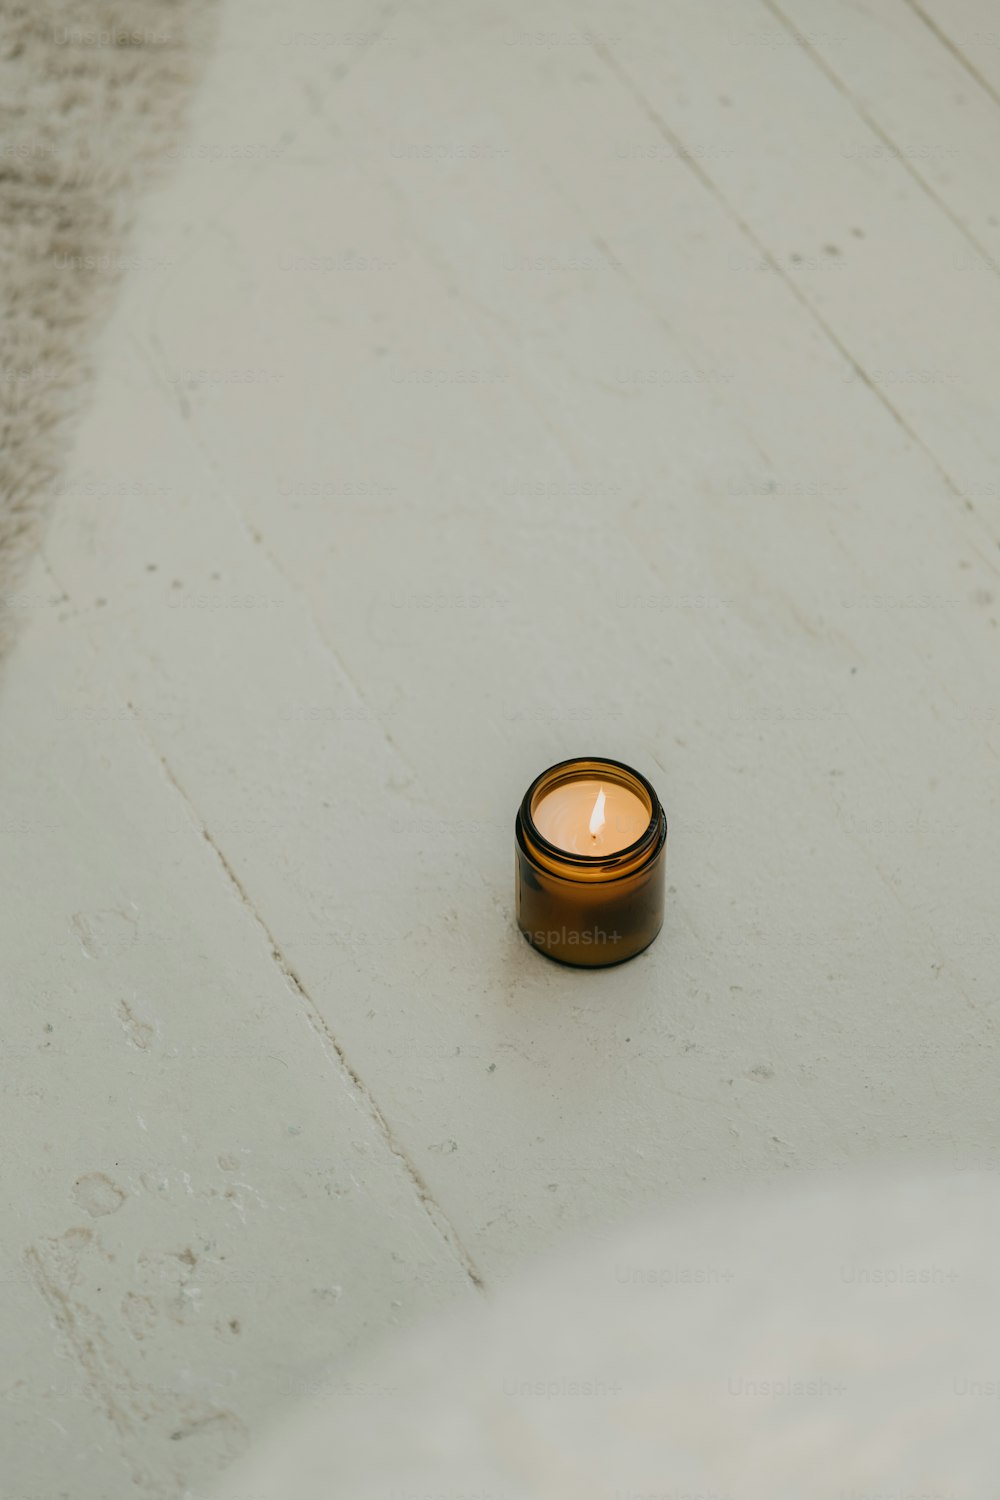 Una pequeña vela sentada sobre una superficie blanca